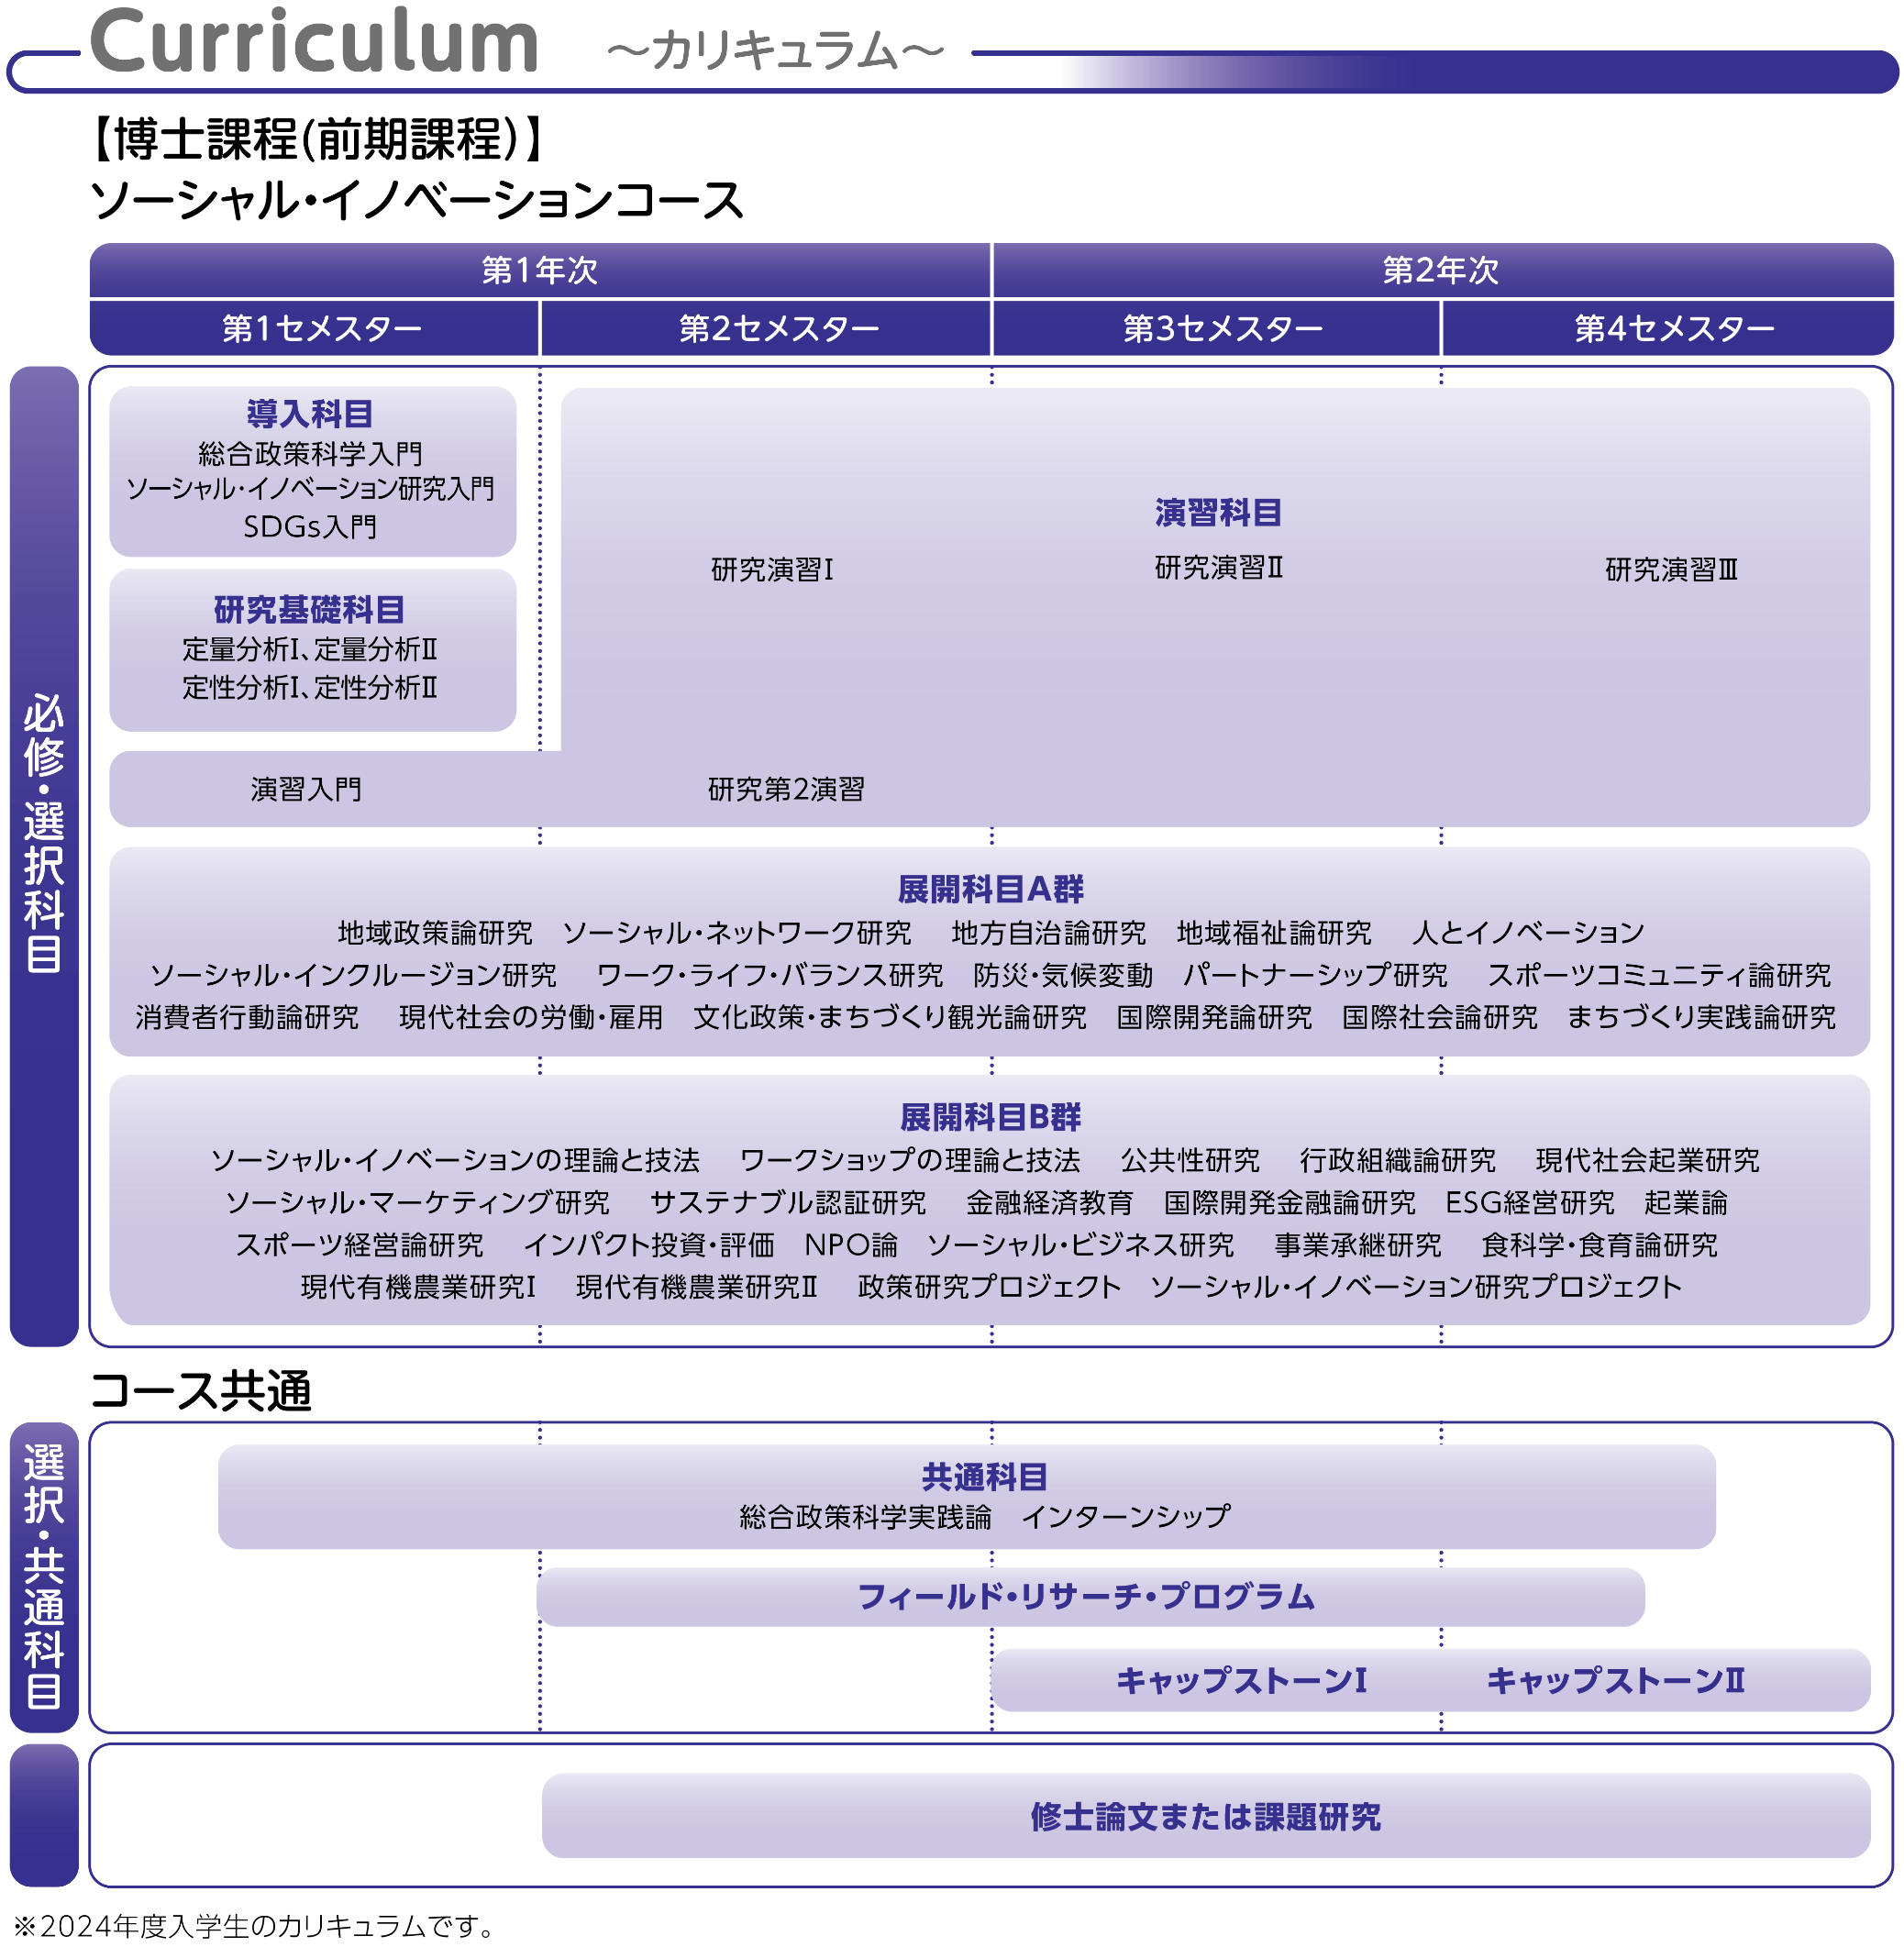 Curriculum 〜カリキュラム〜【博士課程（前期課程）】ソーシャル・イノベーションコース